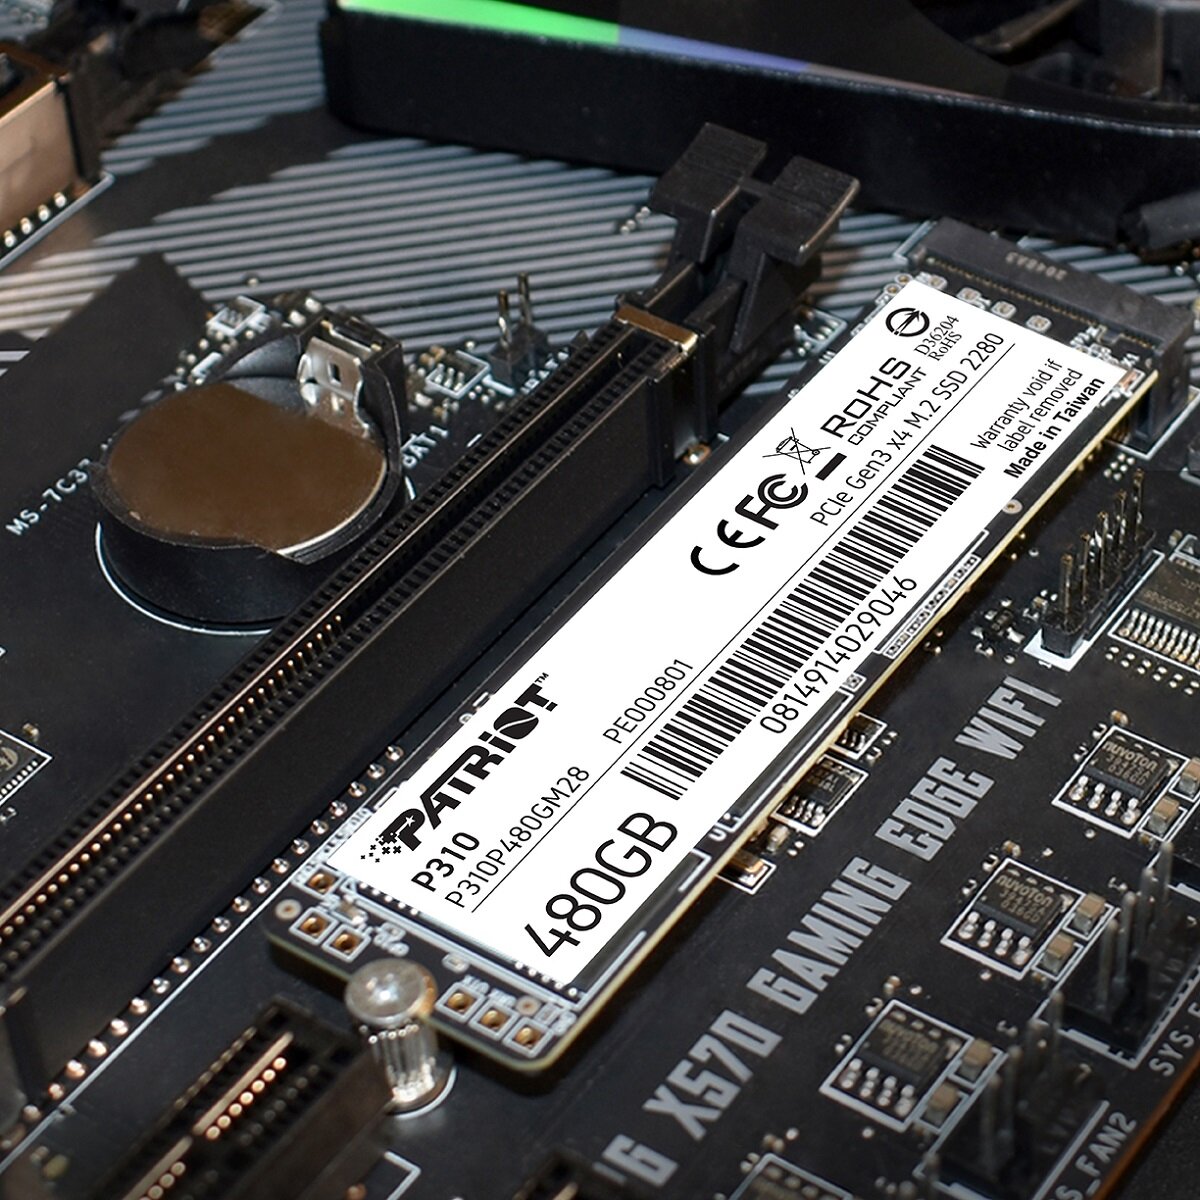 Dysk SSD Patriot P310 480GB M.2 2280 PCI-E x4 Gen3 NVMe widok na zamontowany dysk ssd w płycie głównej